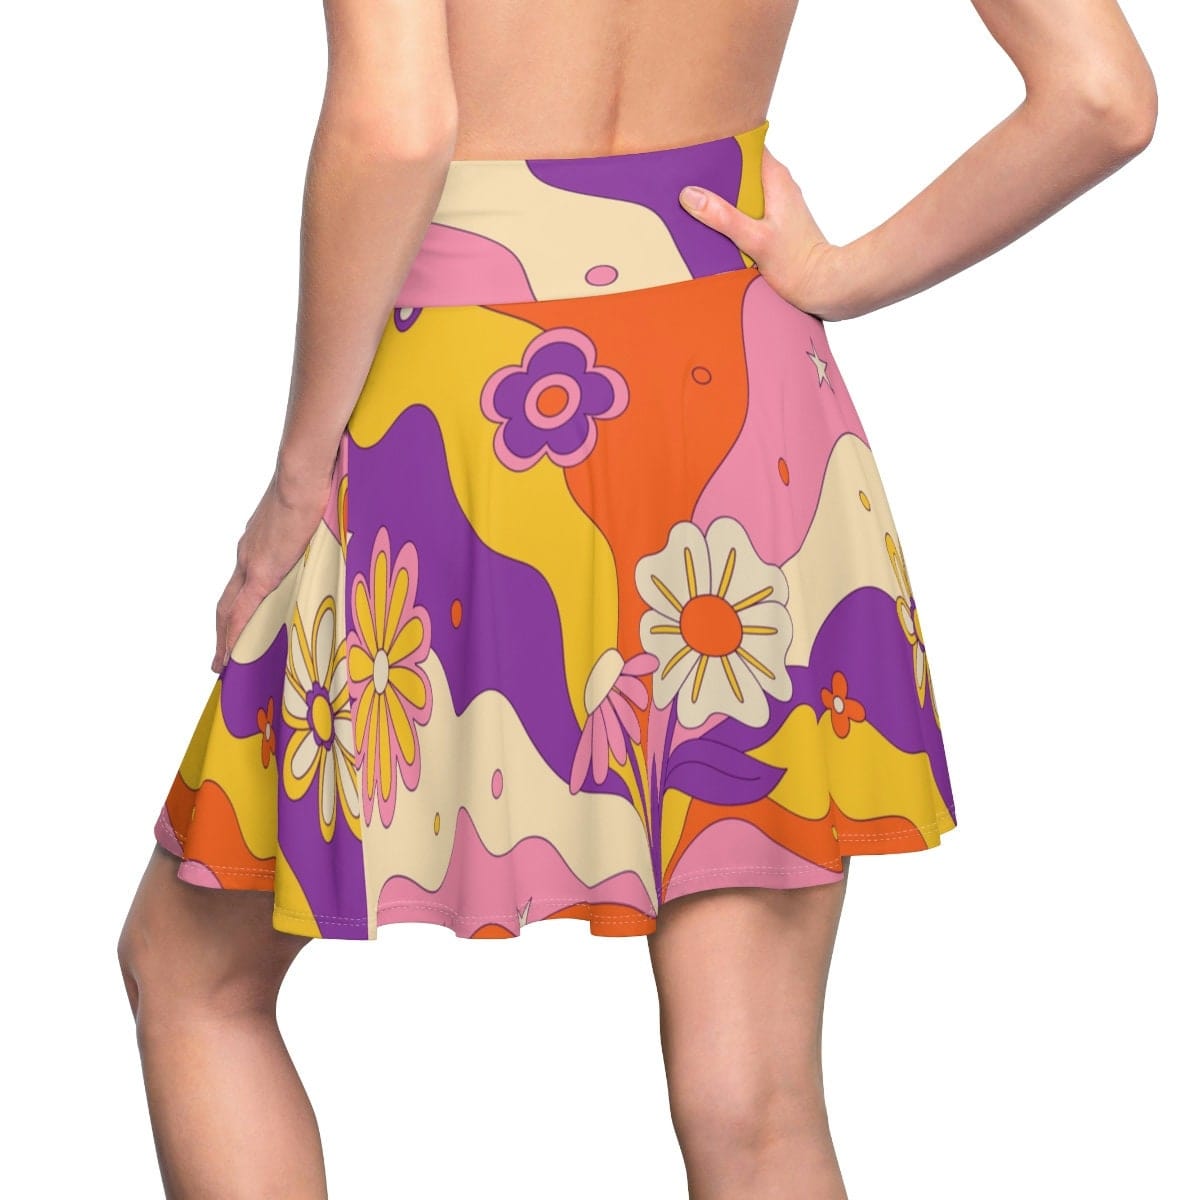 Kate McEnroe New York Retro Mid Century Modern Flower Power Womens Skater Skirt Skater Skirt S 23882618526880173861